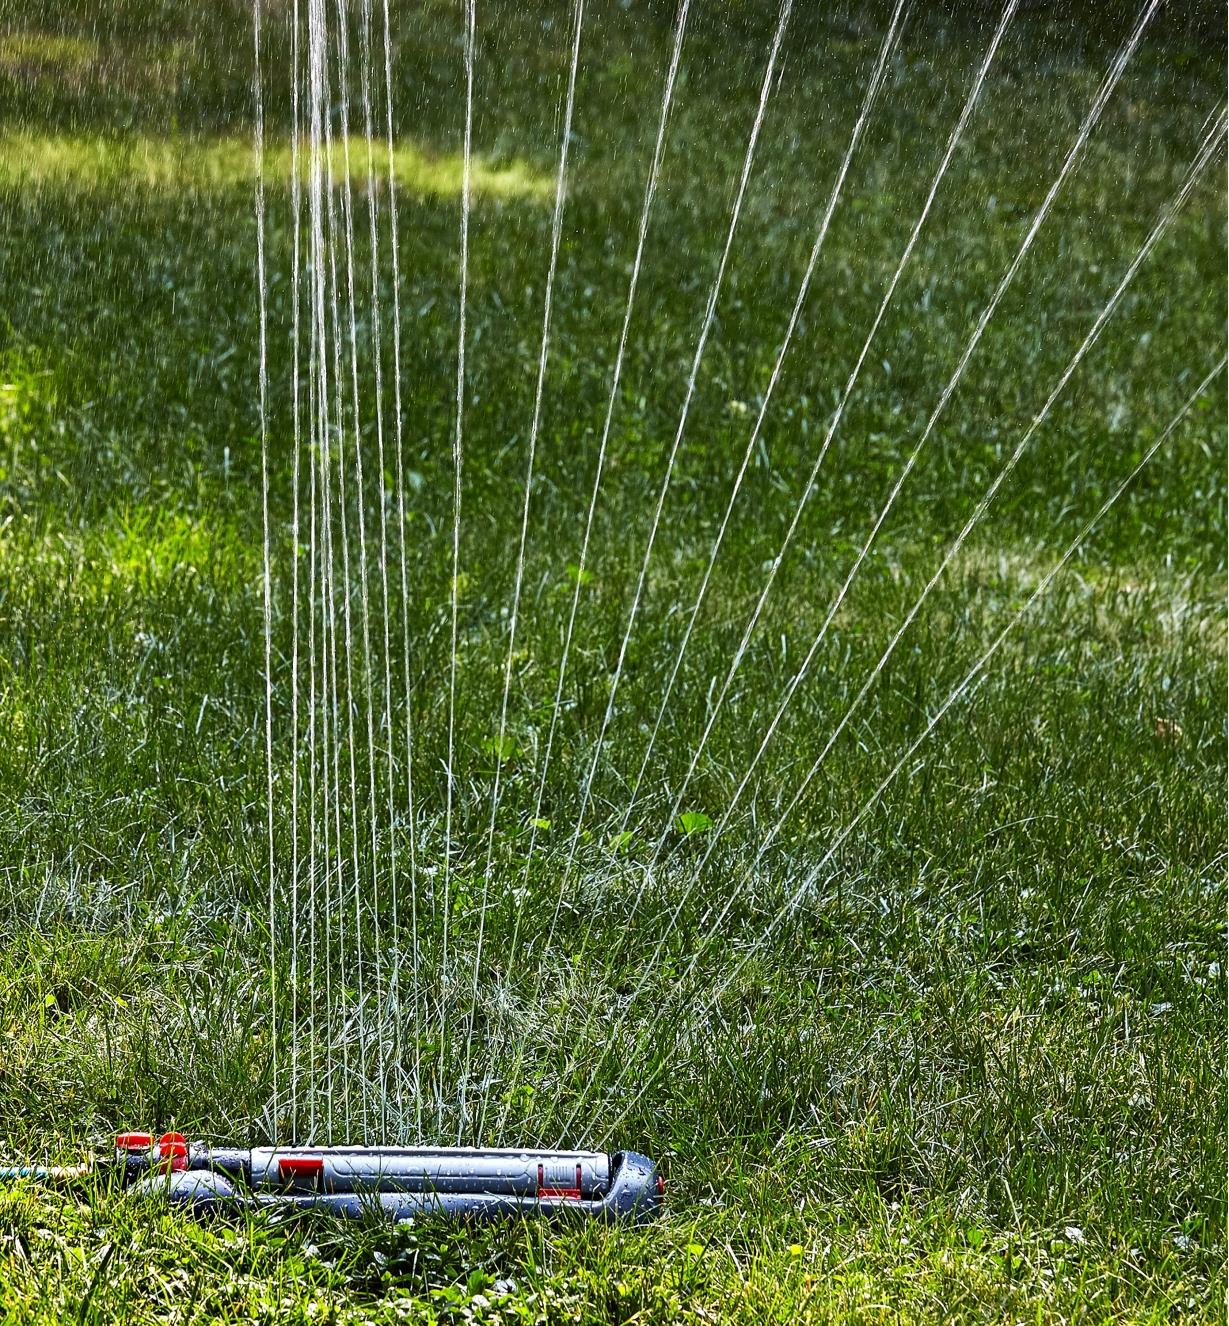 Arroseur oscillant à réglages multiples aspergeant de l'eau sur une pelouse par un jet mi-droit mi-éventail vers la droite